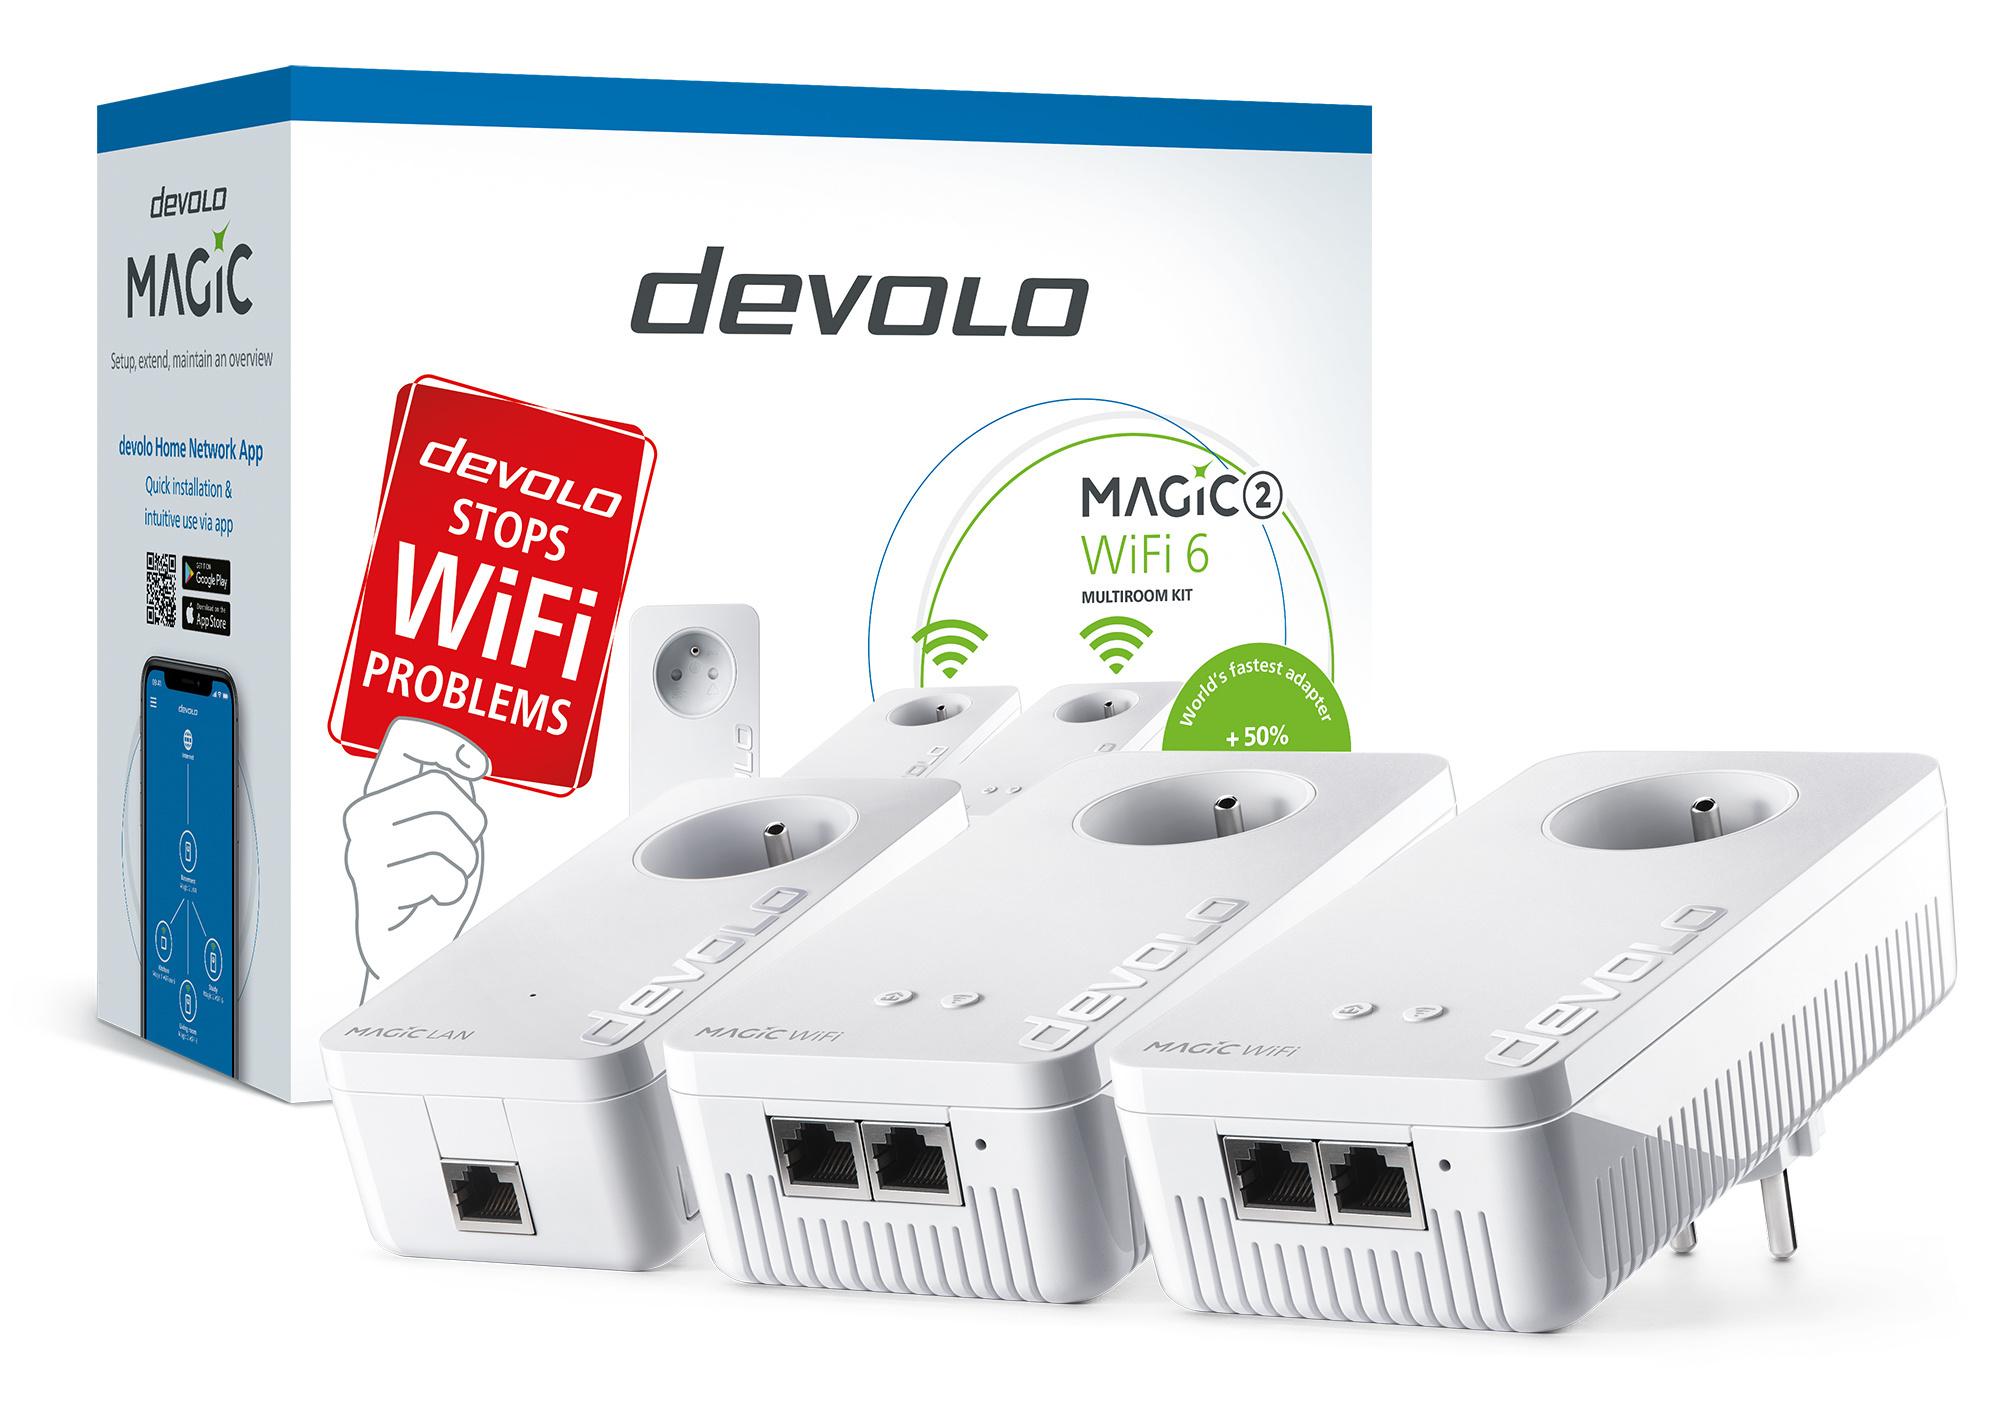 Le devolo Magic 2 WiFi 6 est-il la solution pour un réseau domestique?